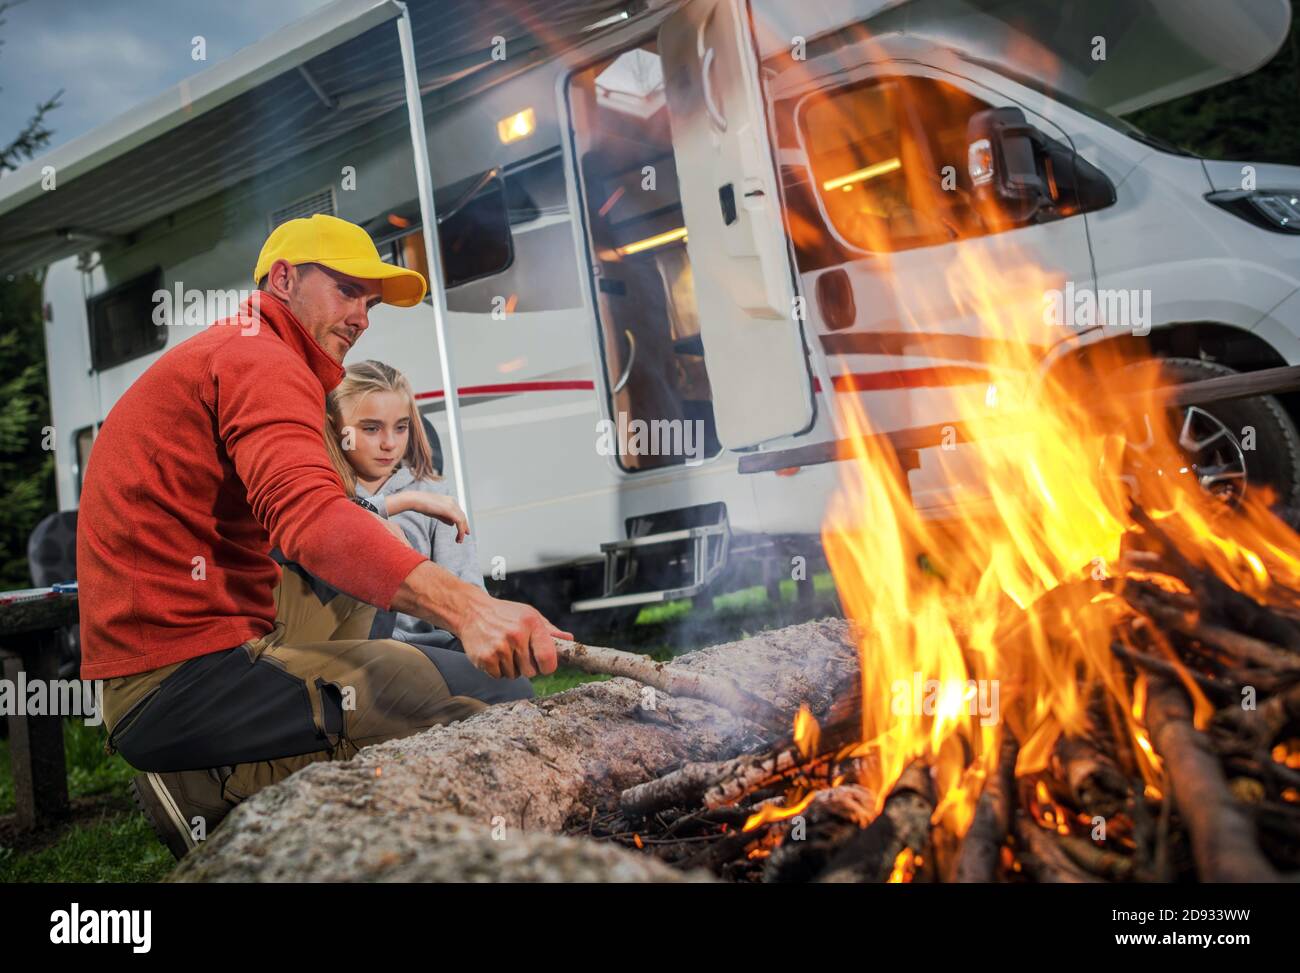 Camping camping-car pour véhicules récréatifs et temps familial. Le Père caucasien et sa fille pendent à côté de Campfire sur leur terrain de camping-car. Classe C Mot Banque D'Images